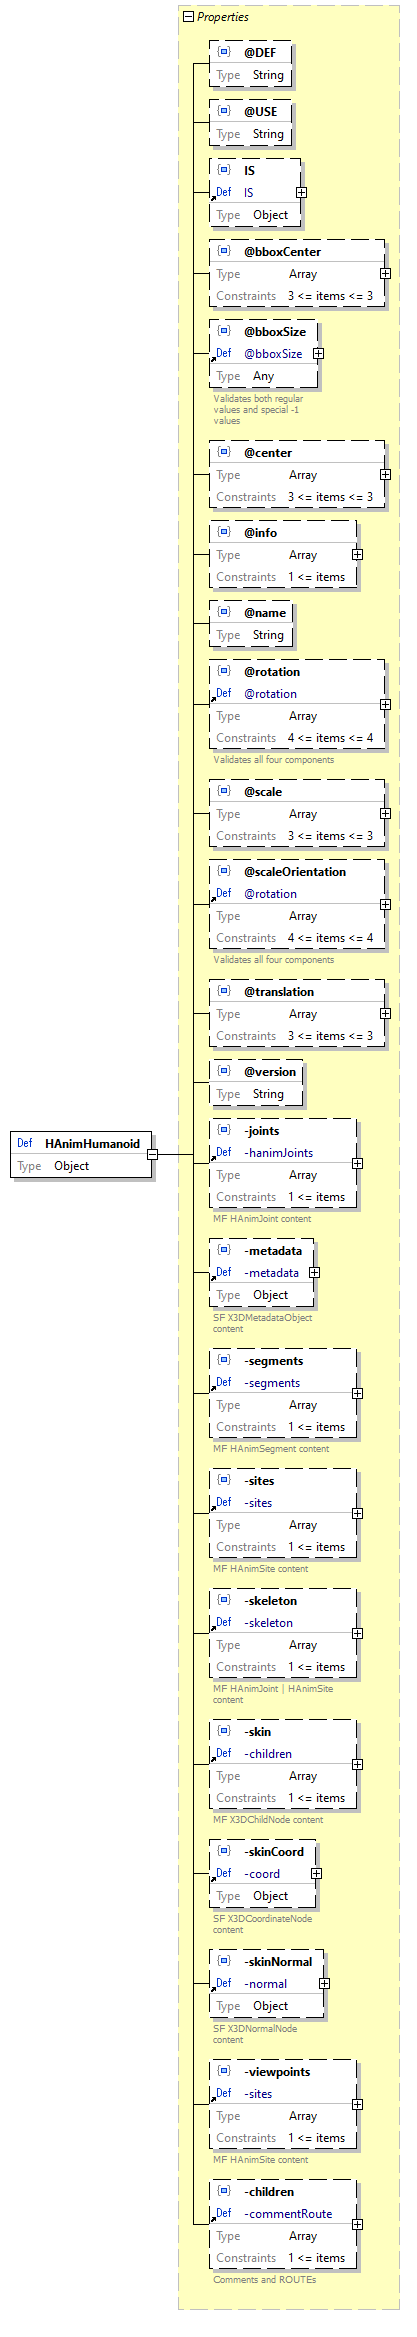 x3d-3.3-JSONSchema_diagrams/x3d-3.3-JSONSchema_p1186.png